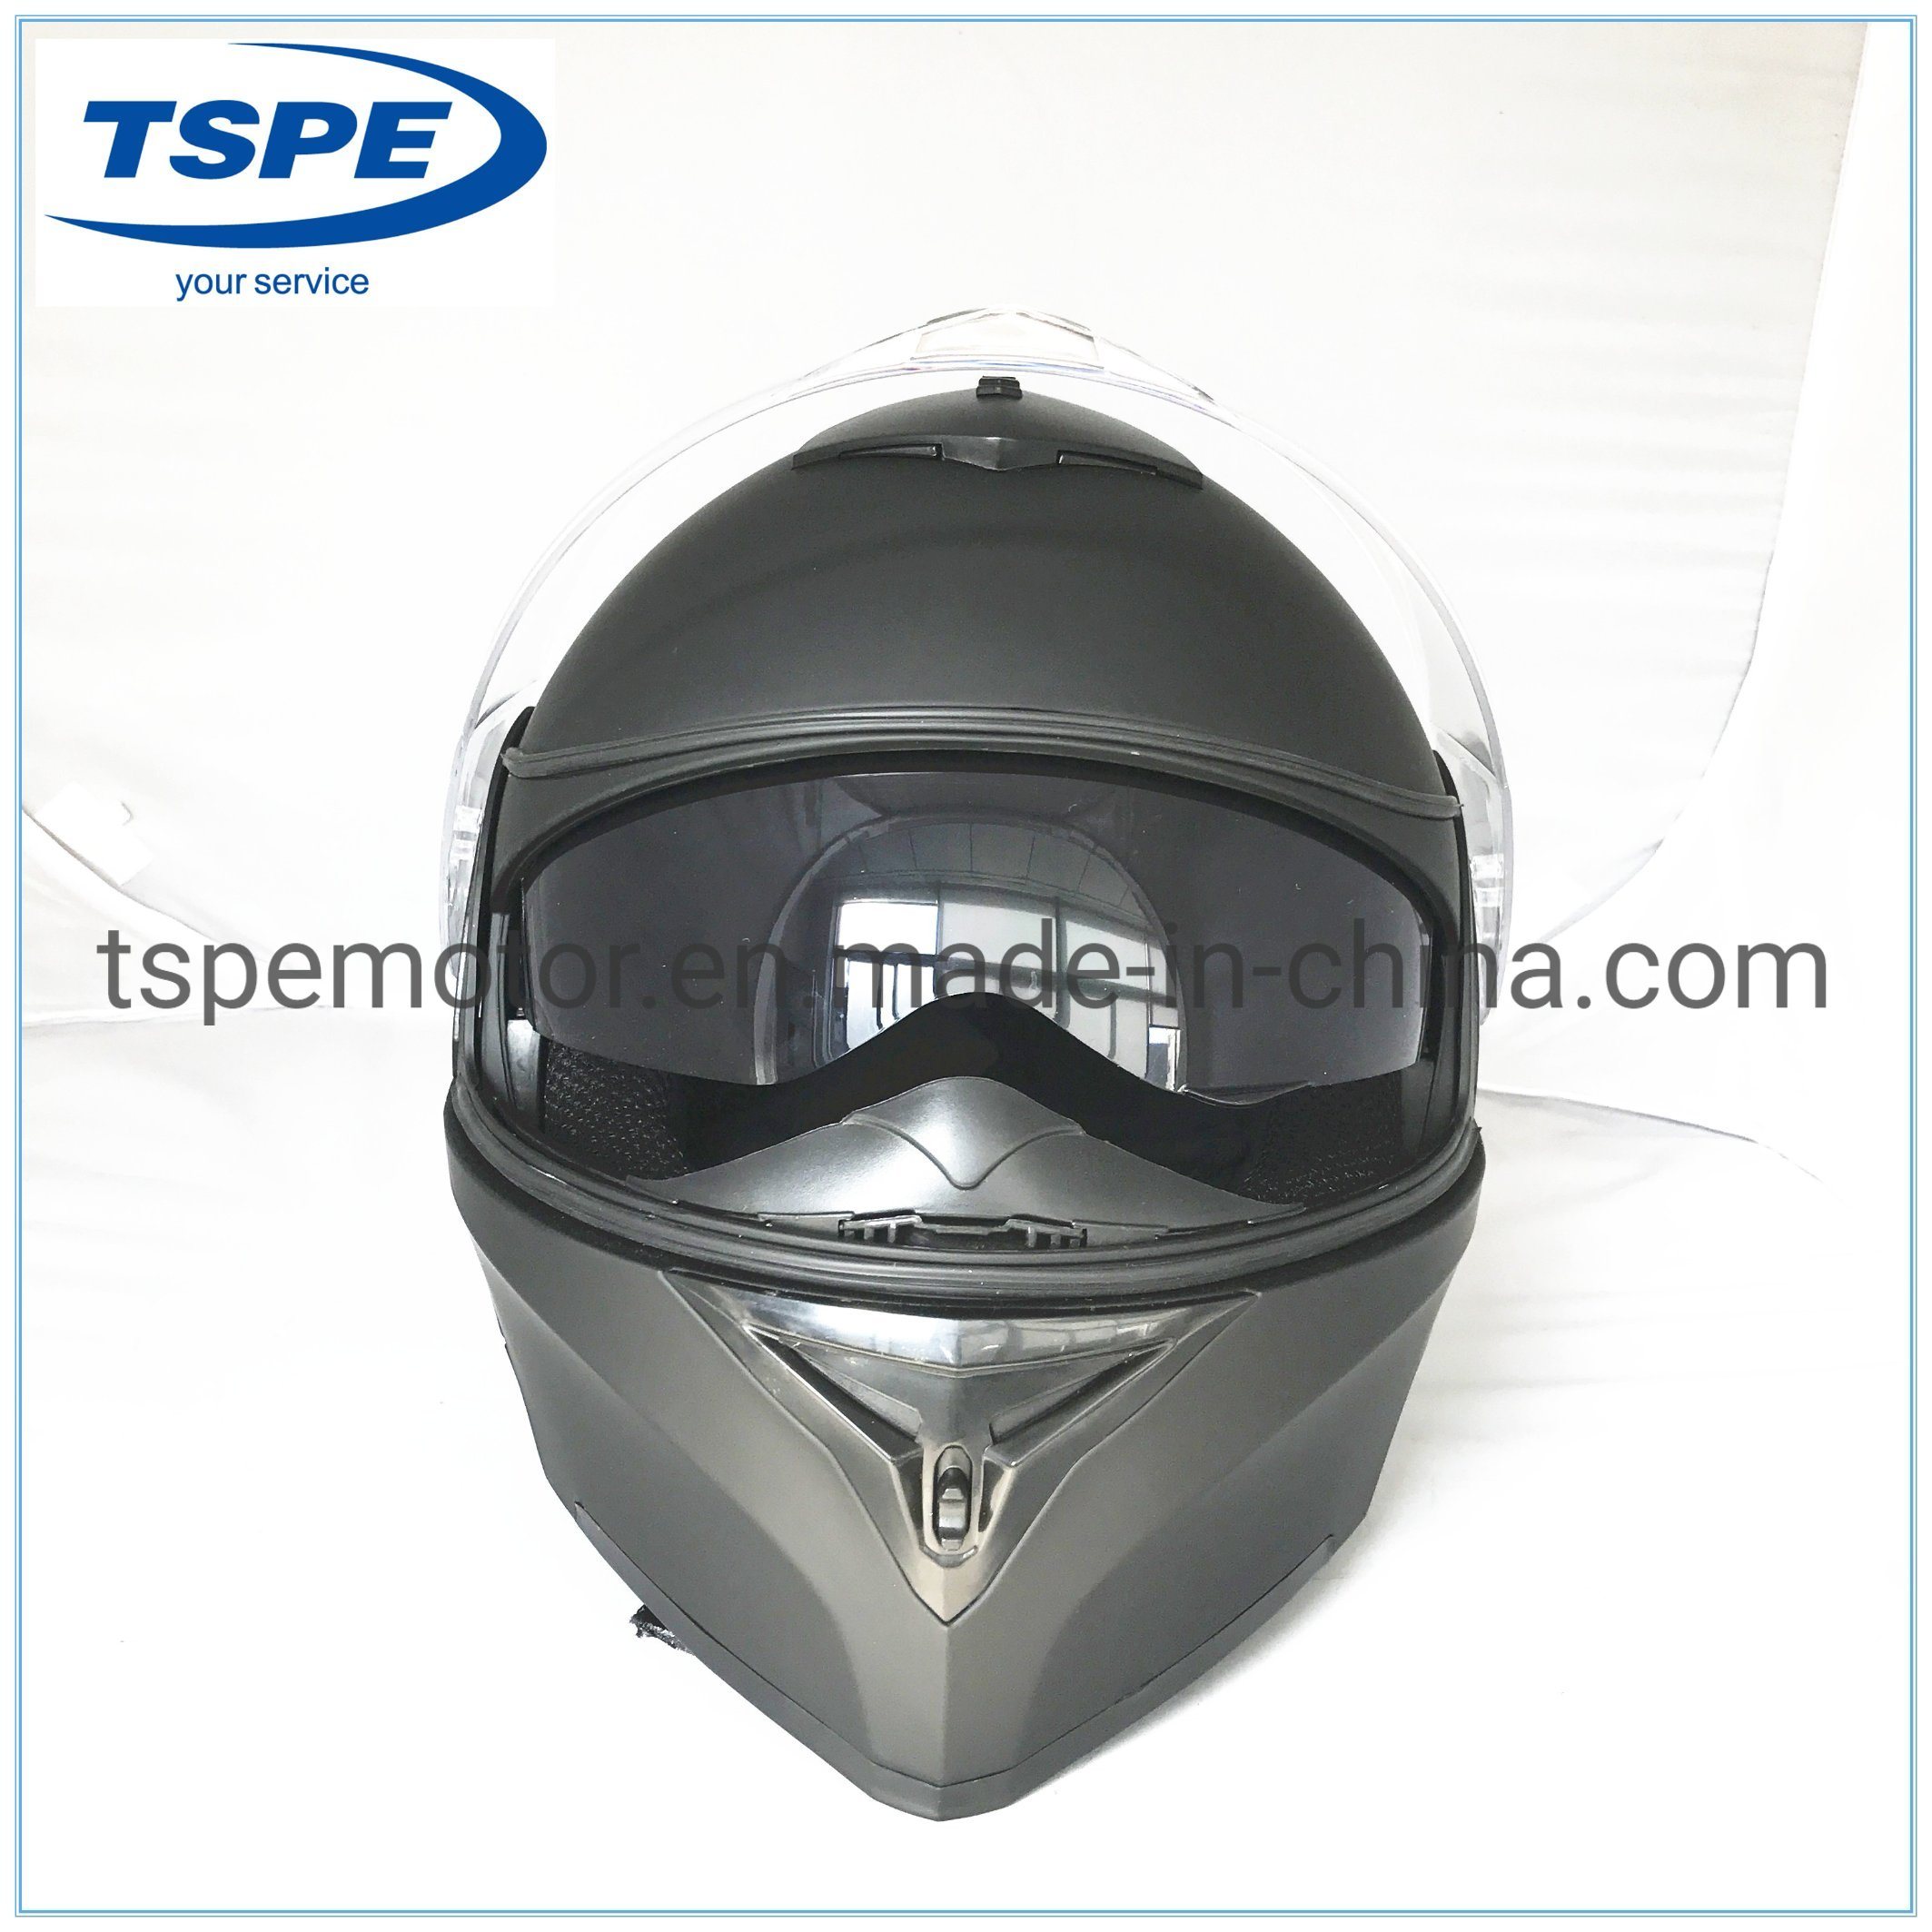 New Arrival New Model Filp up Helmet Double Visors Vr-290 DOT